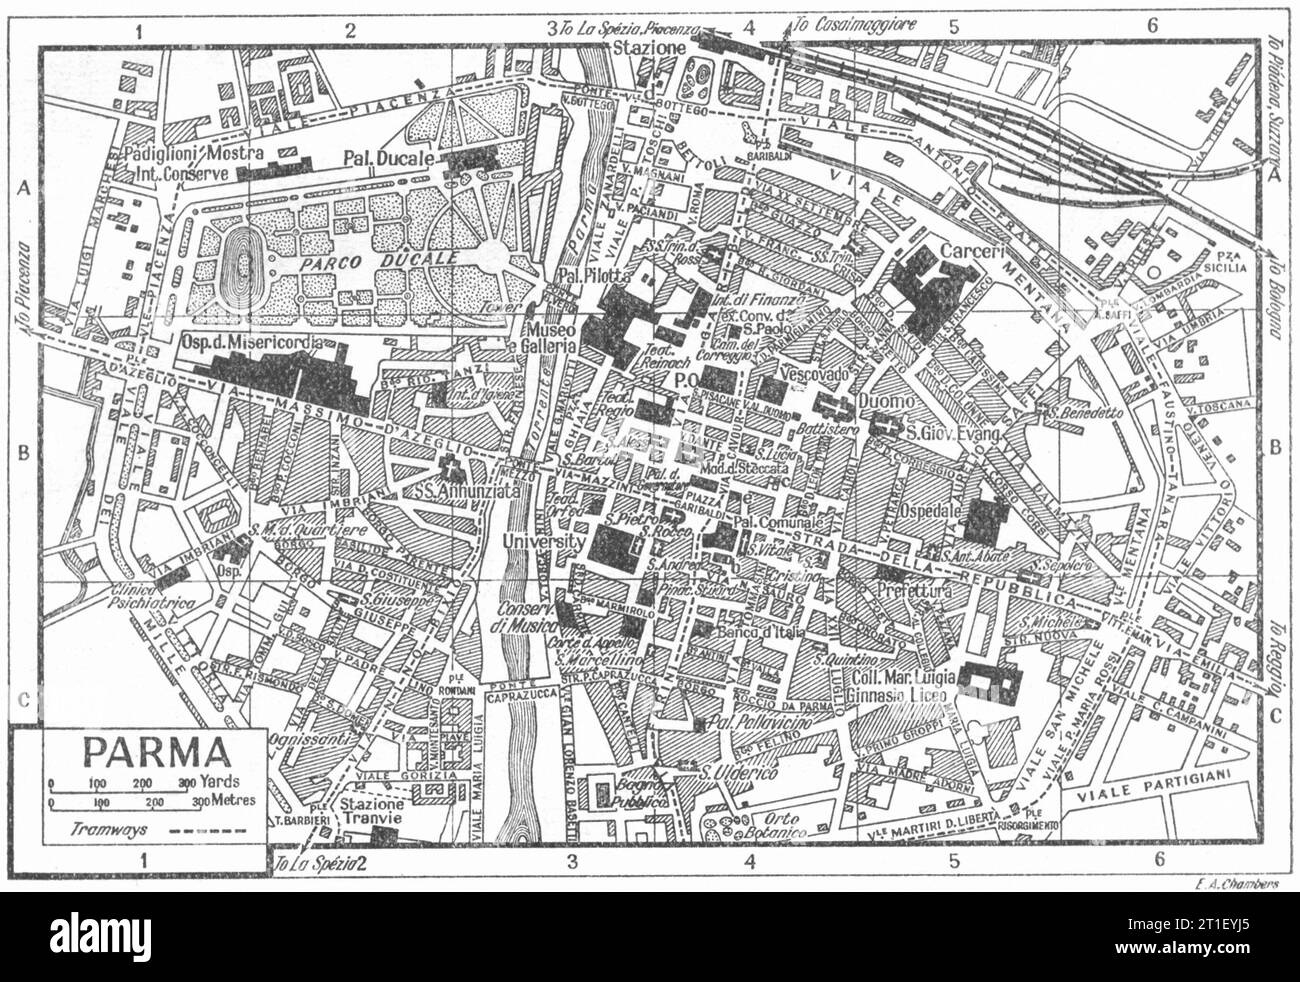 Plan de la ville DE PARME. Italie 1953 ancienne carte vintage Banque D'Images